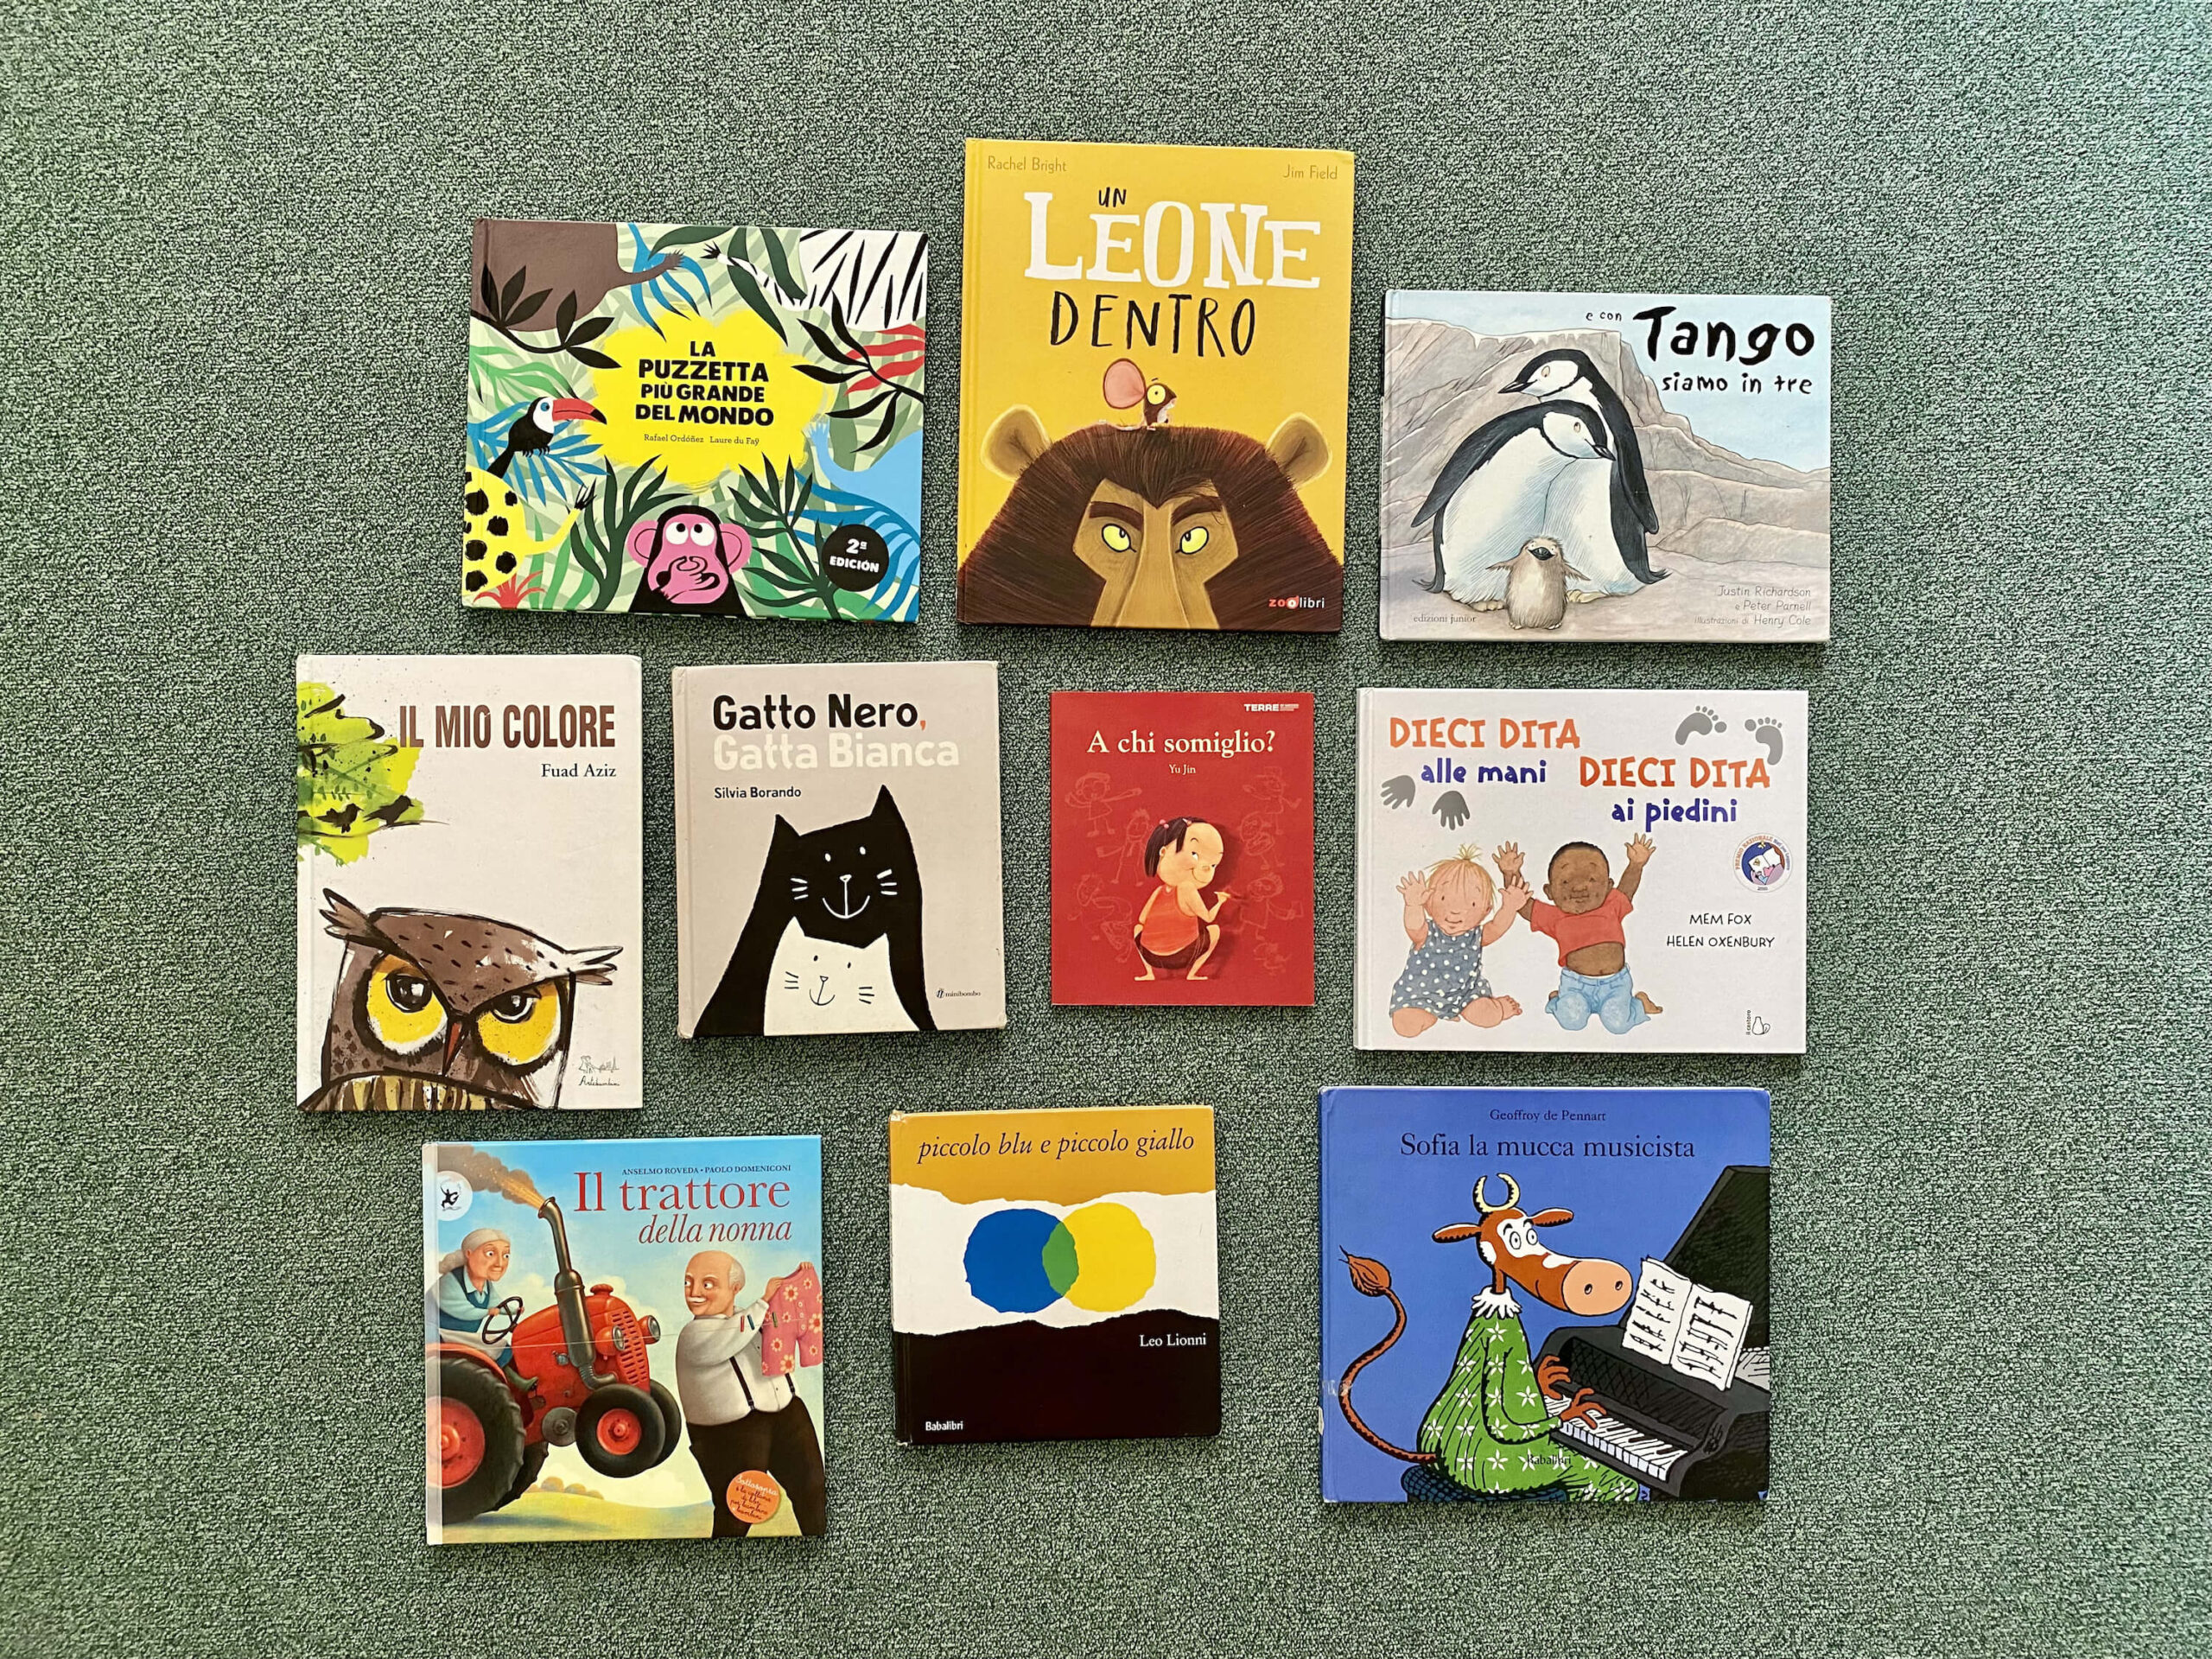 Libri per bambini per valorizzare la diversità - Mercoledì tutta